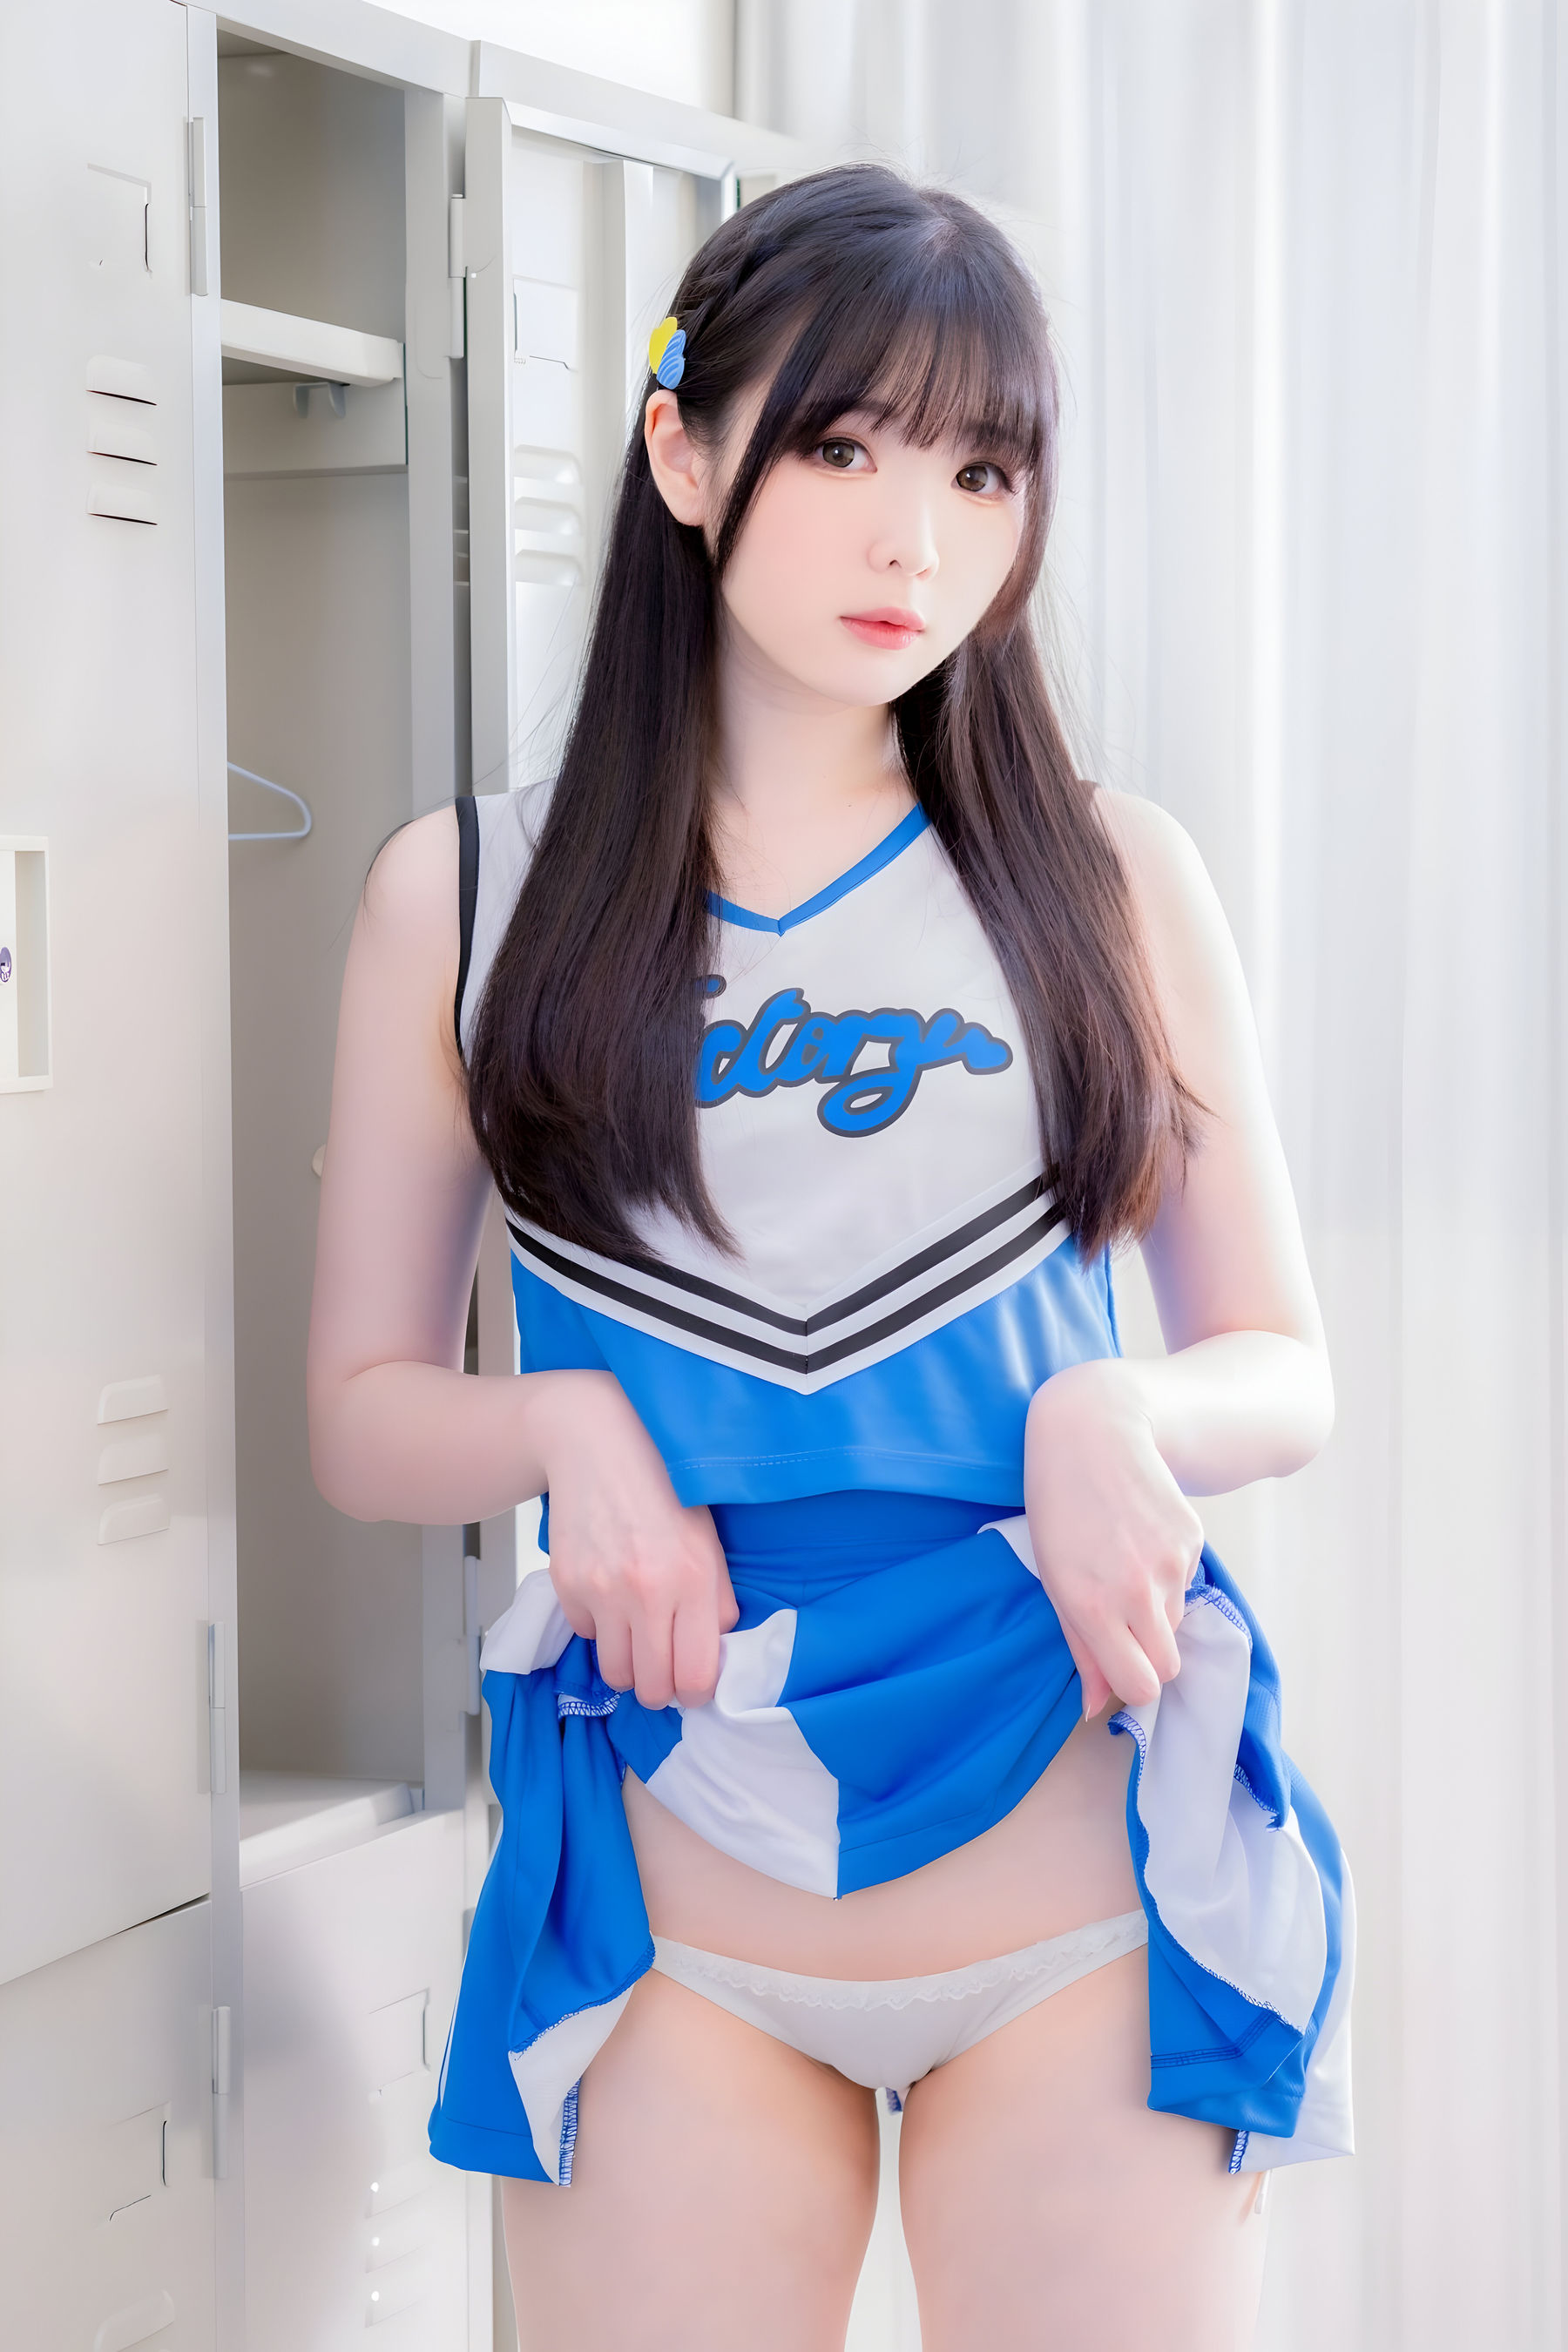 微博妹纸霜月shimo - Cheerleader/(21P)